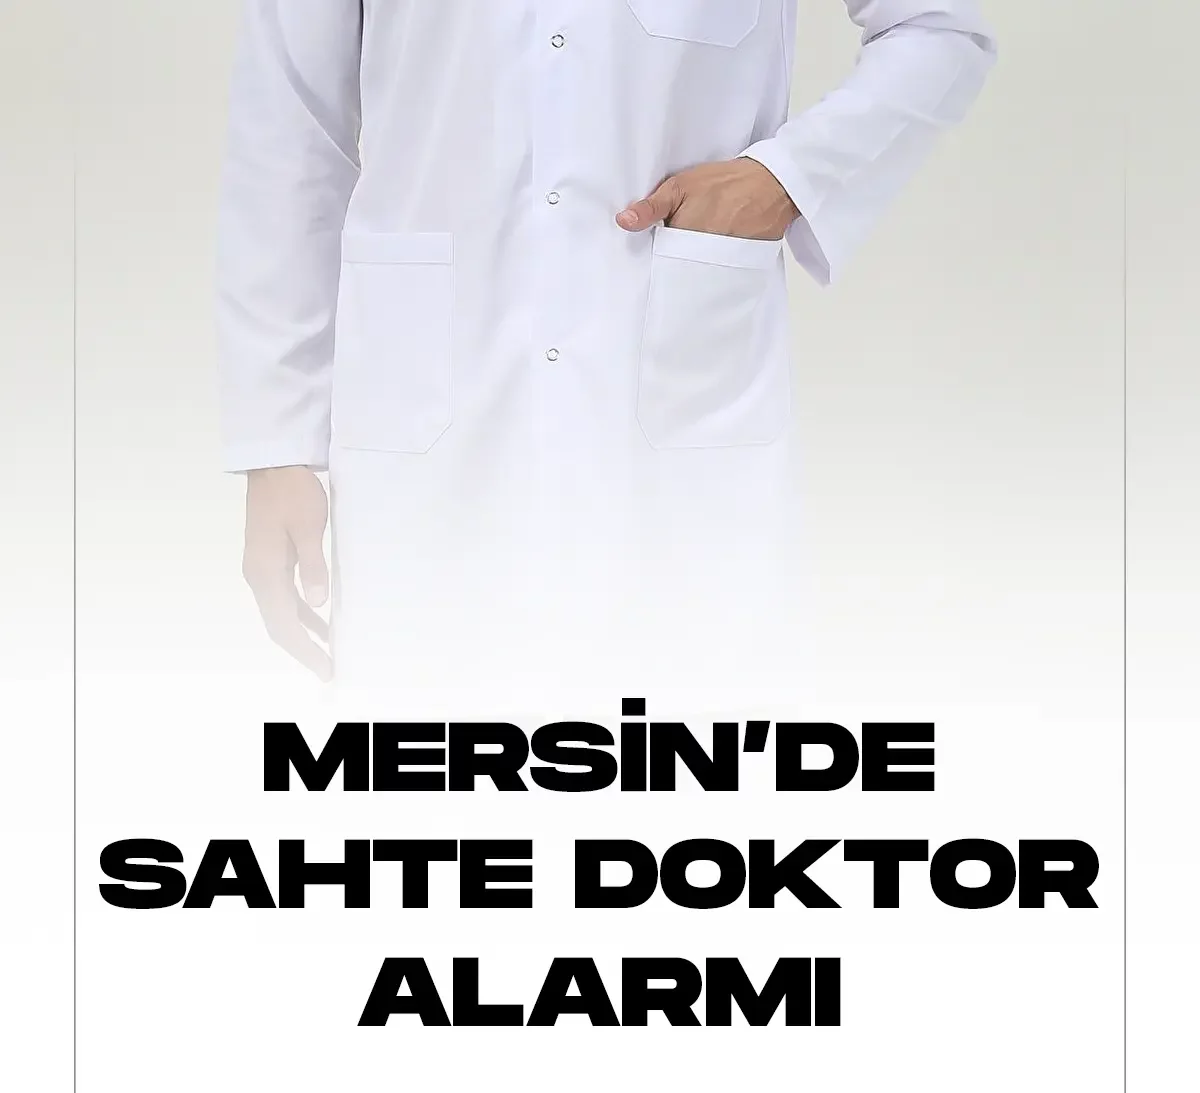 Mersin'de kendisini anestezi doktoru olarak tanıttığı hastanede önlük isteyen şahıs, güvenlik görevlilerinin dikkati sayesinde kıskıvrak yakalandı.